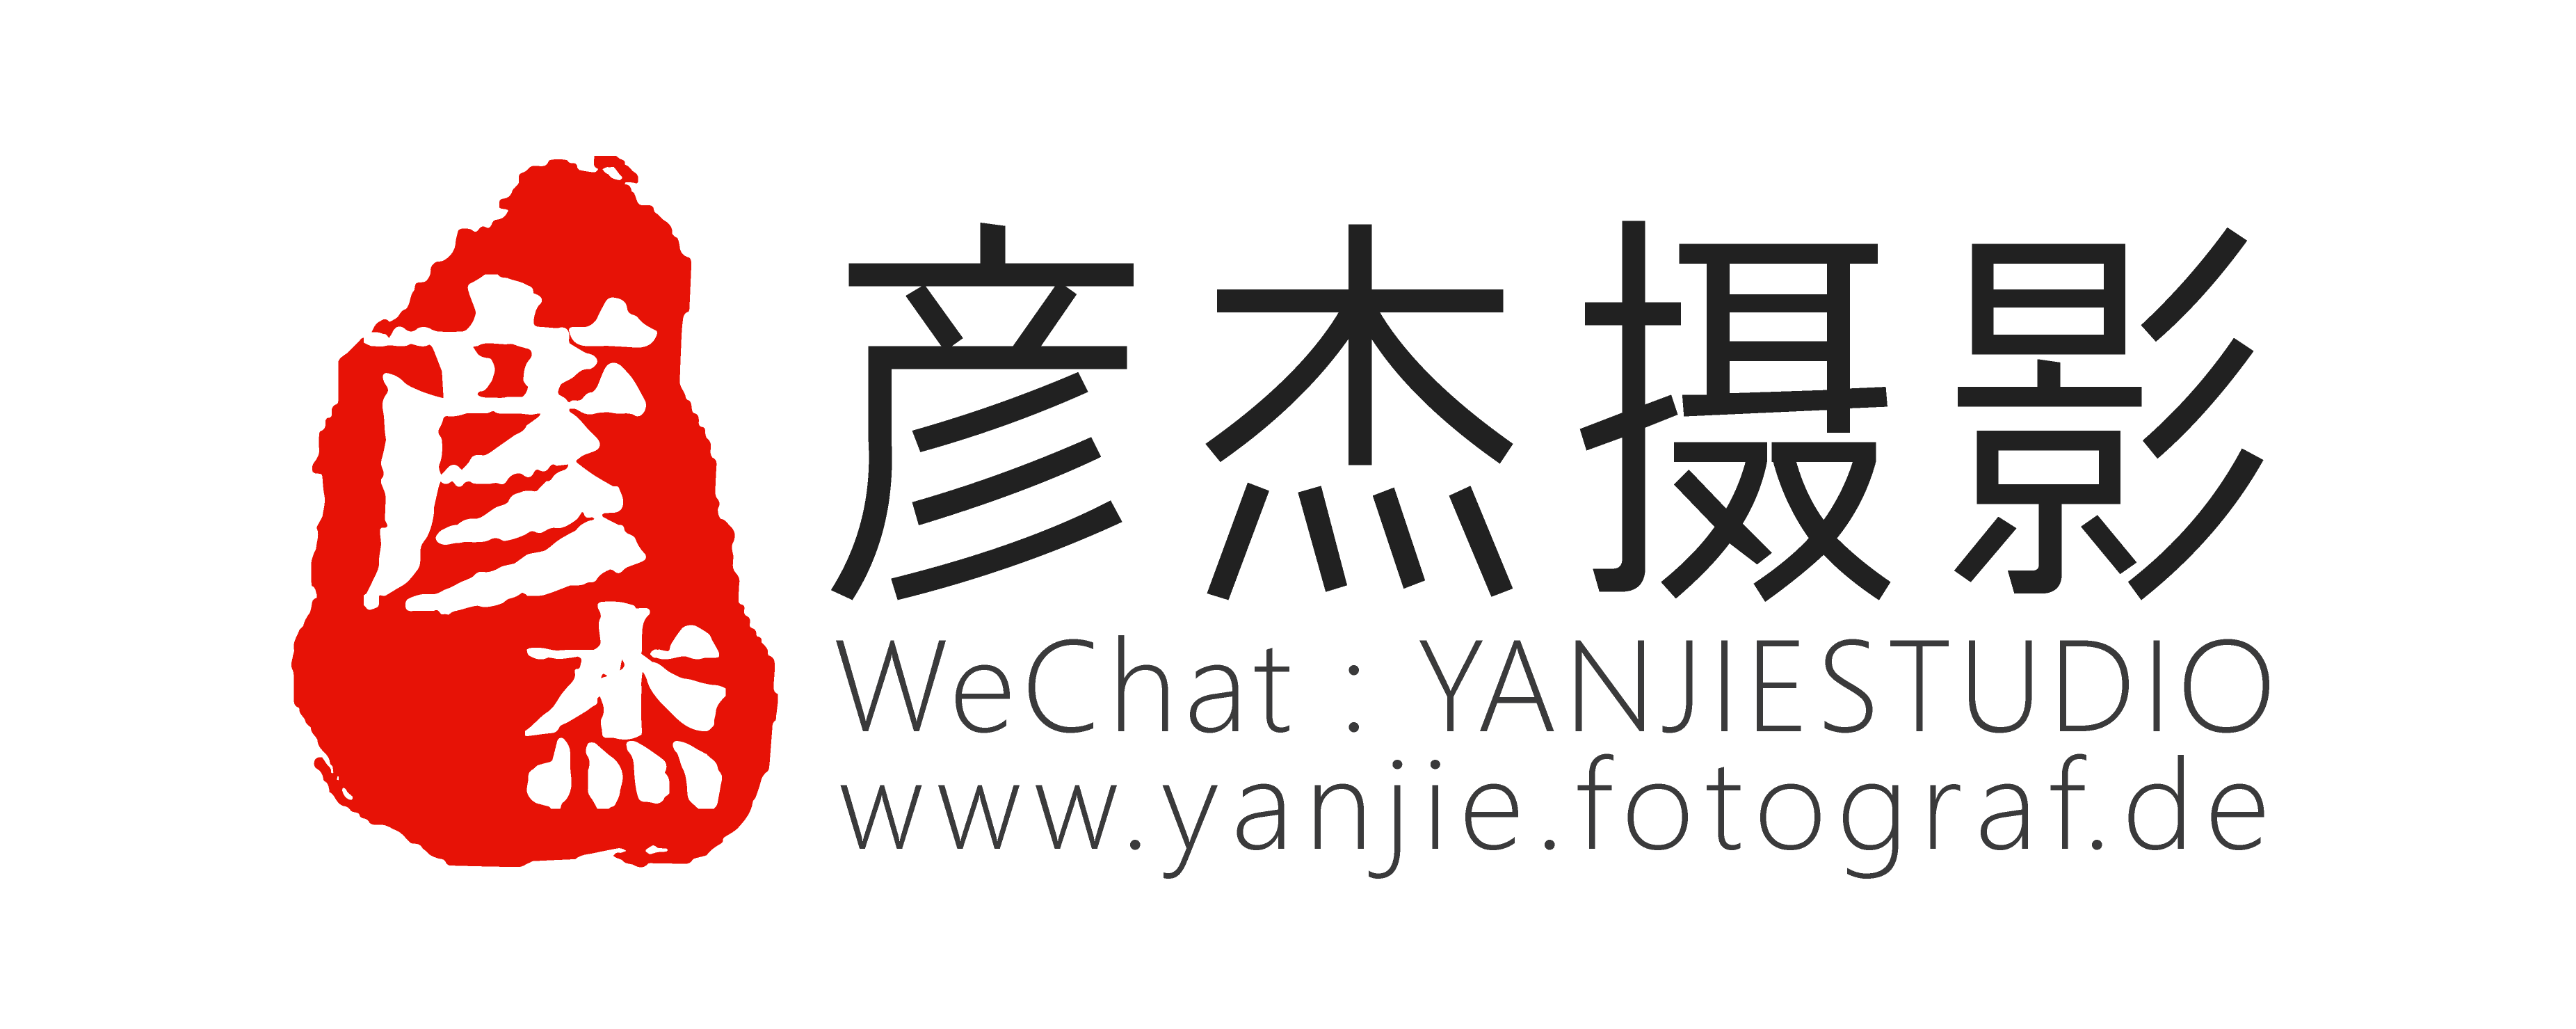 Yanjie Bauernfeind